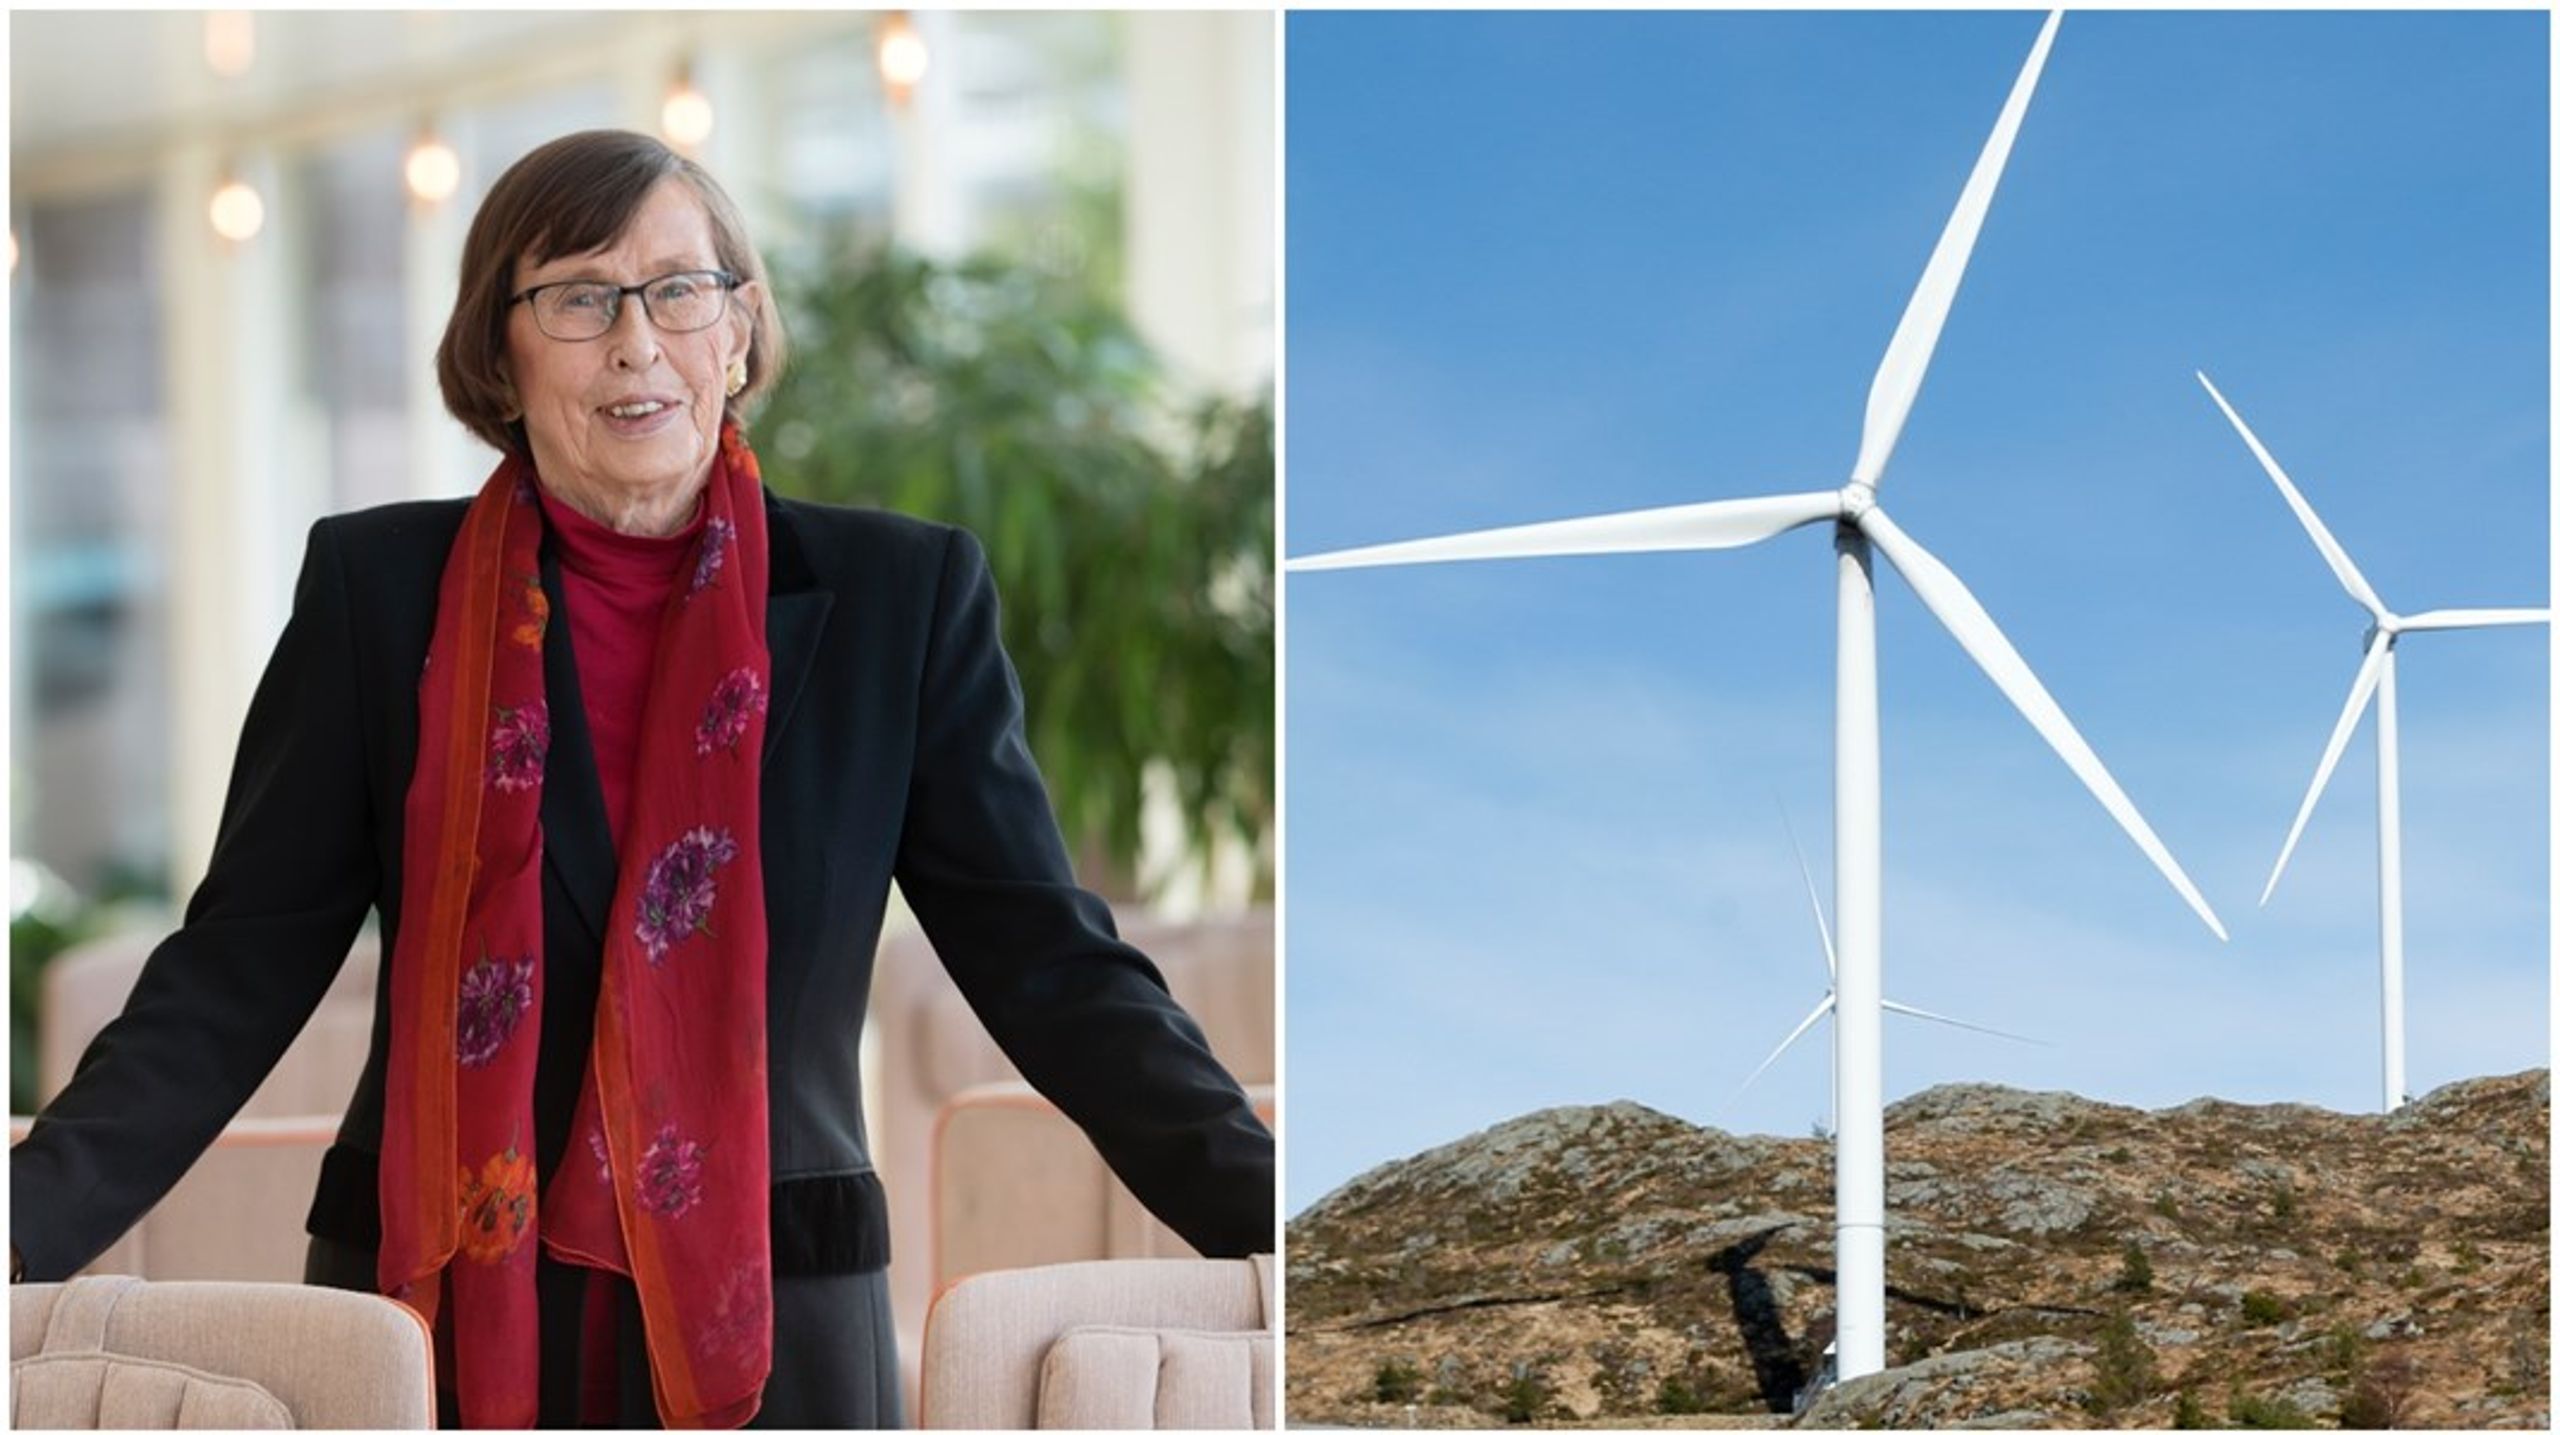 Den tidigare miljö- och energiministern Birgitta Dahl (S) är en av dem som har påtalat den starka&nbsp;mansdominansen i energisektorn.